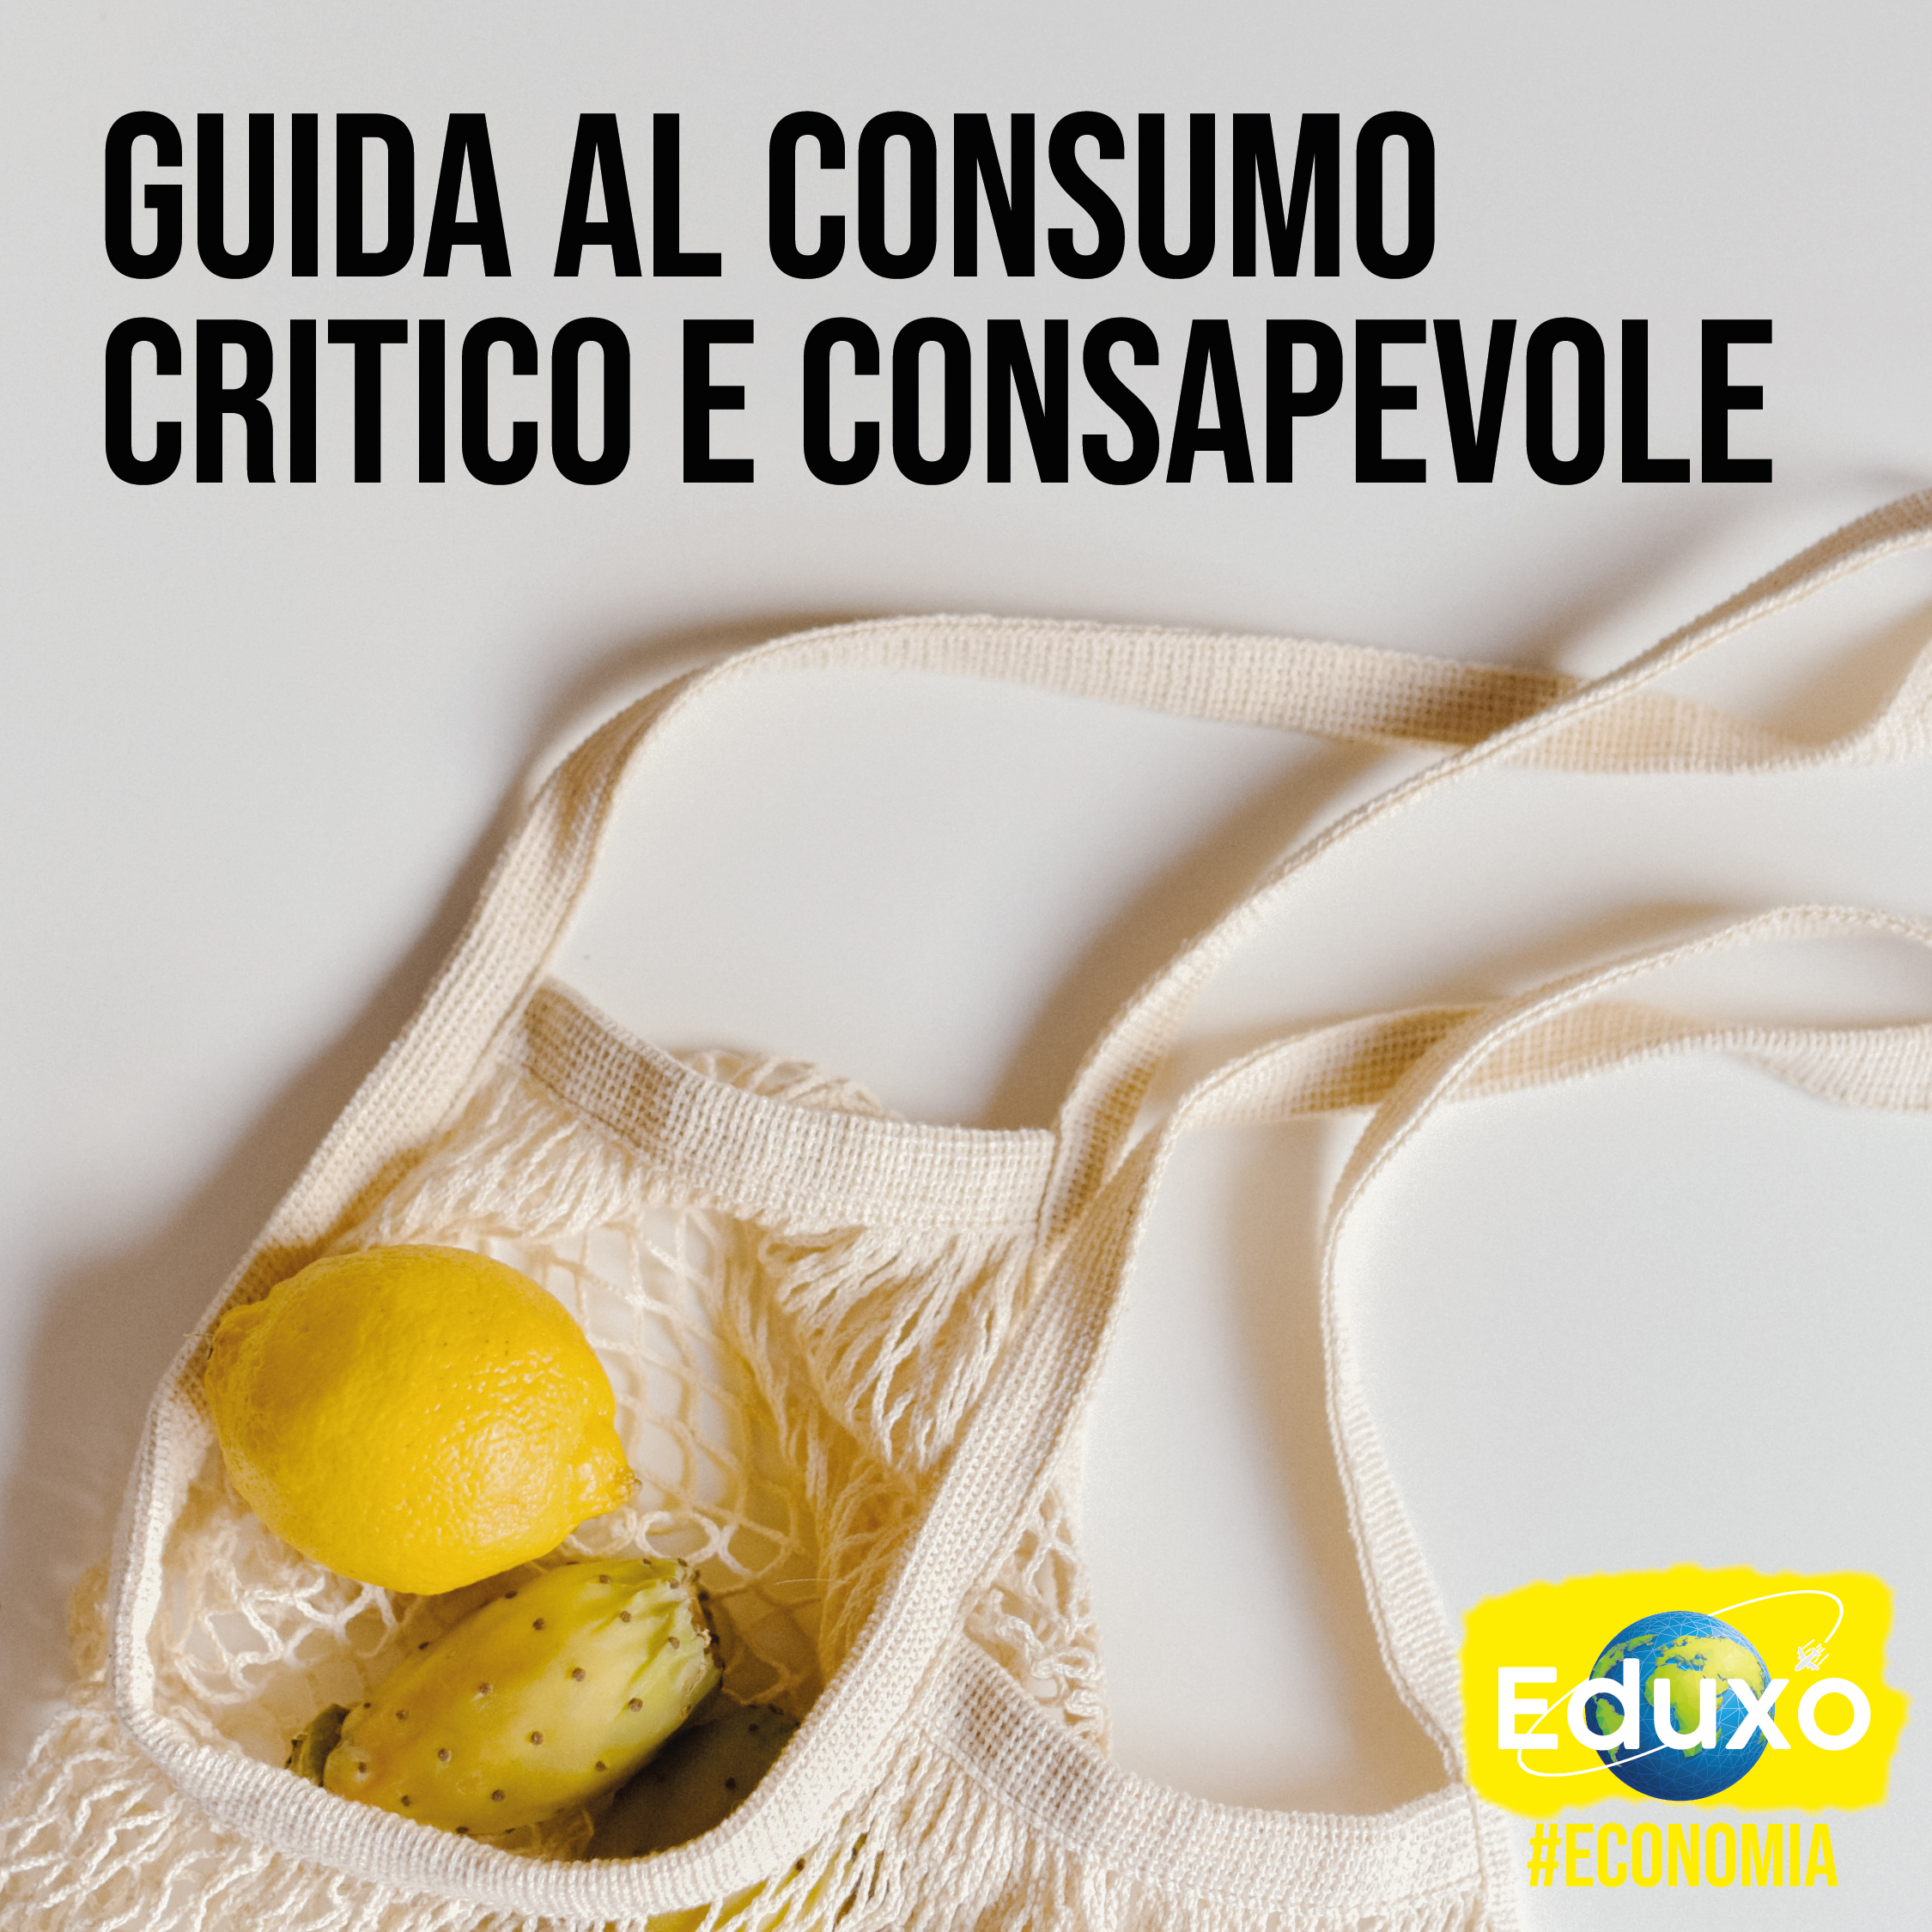 You are currently viewing Guida al consumo critico e consapevole